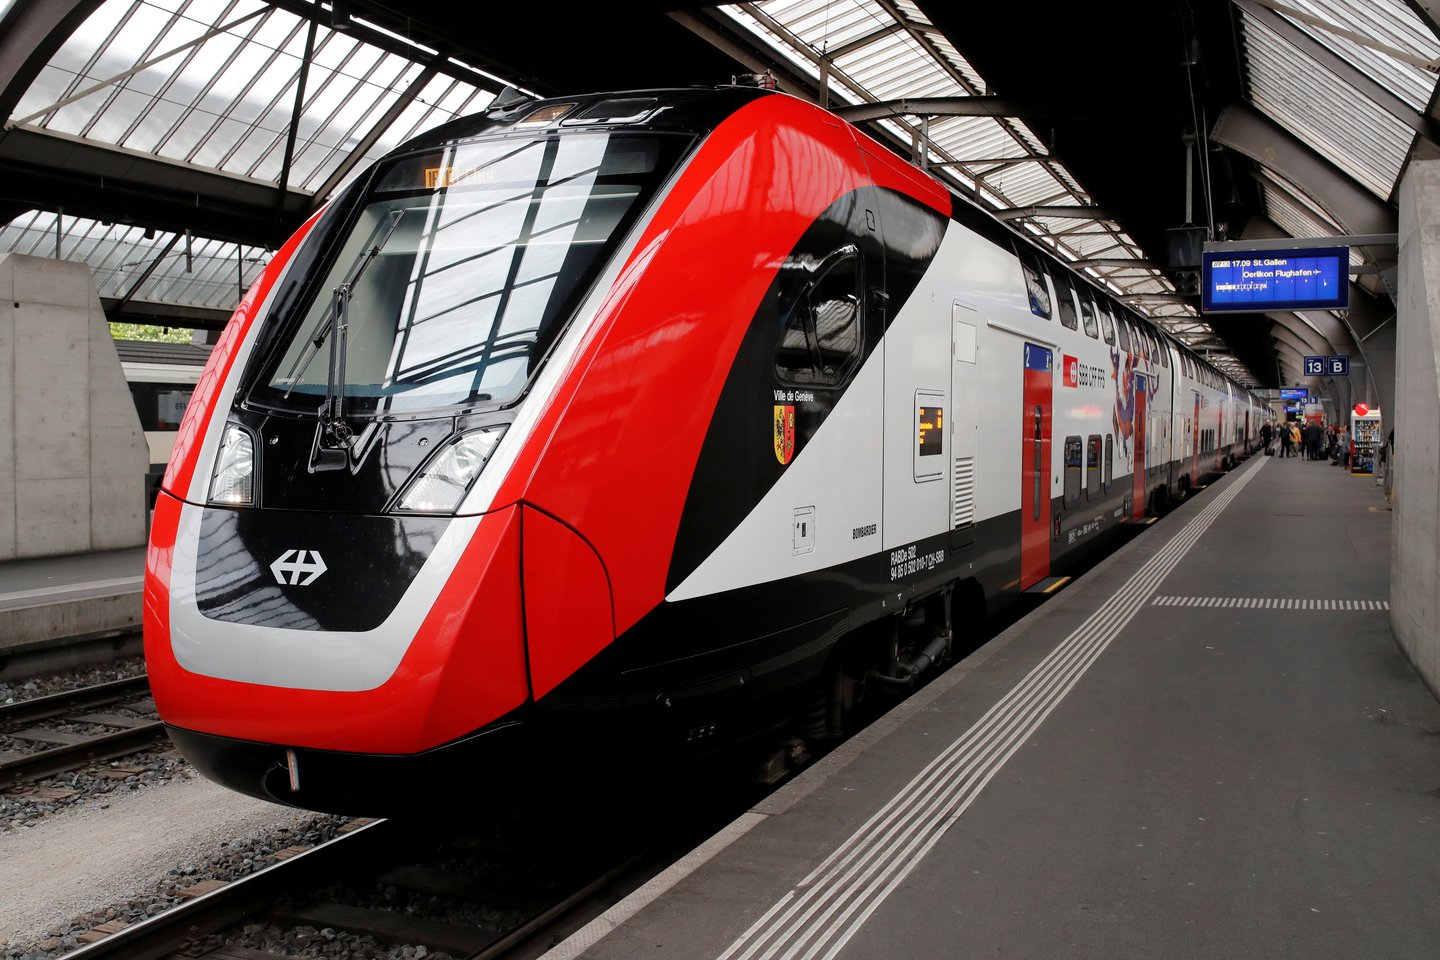  Šveicarijos kalnų tunelyje susidūrus dviem traukiniams nukentėjo keli žmonės.  <br> Reuters/Scanpix nuotr.